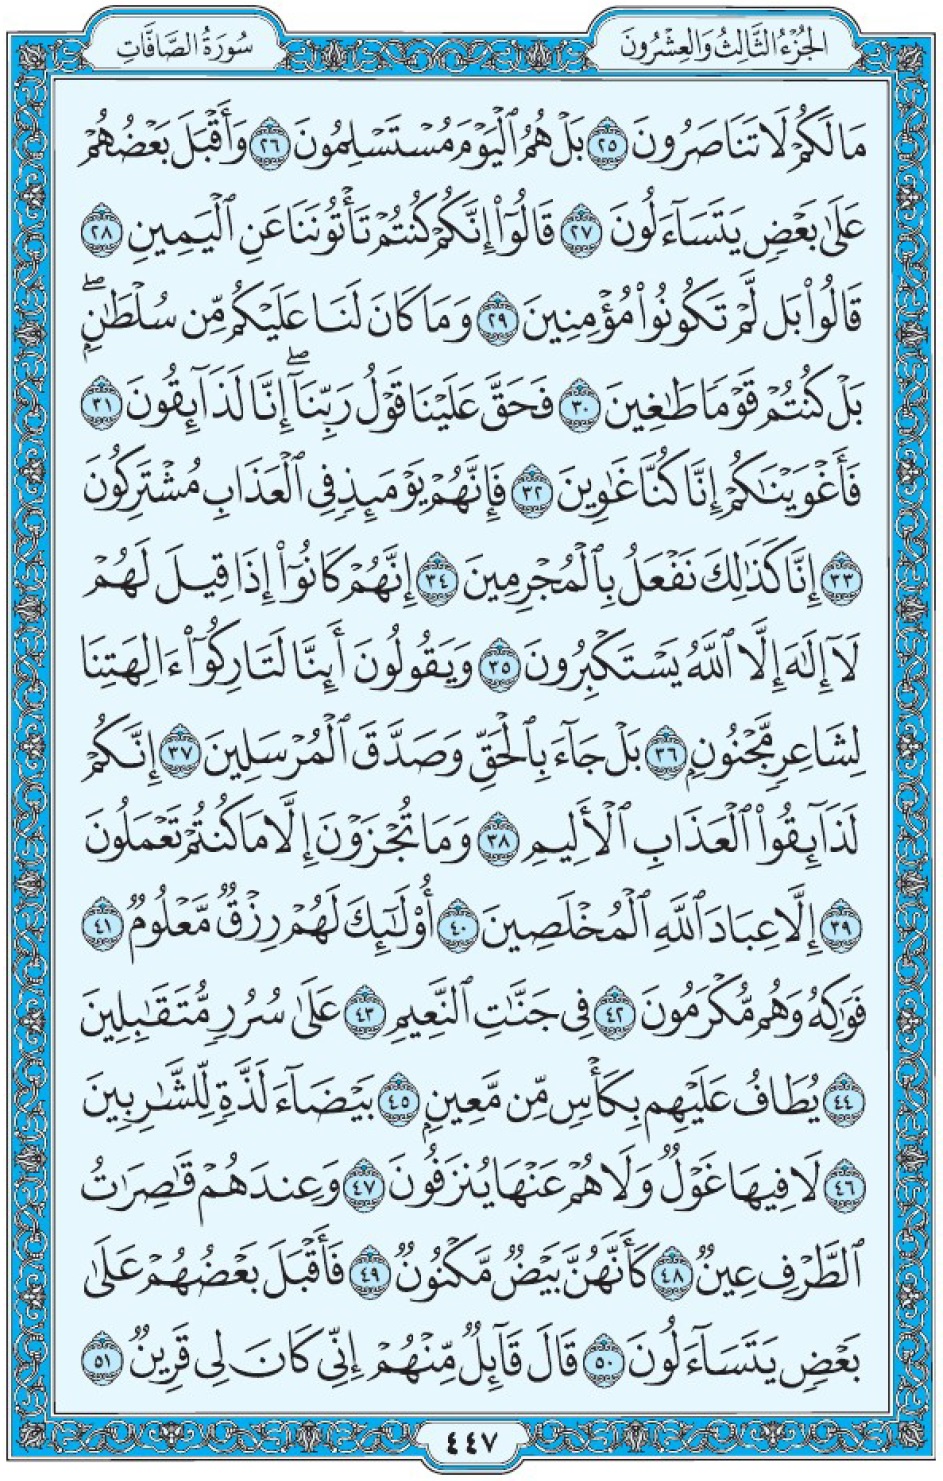 Коран Мединский мусхаф страница 447, Ас-Саффат, аят 25-51